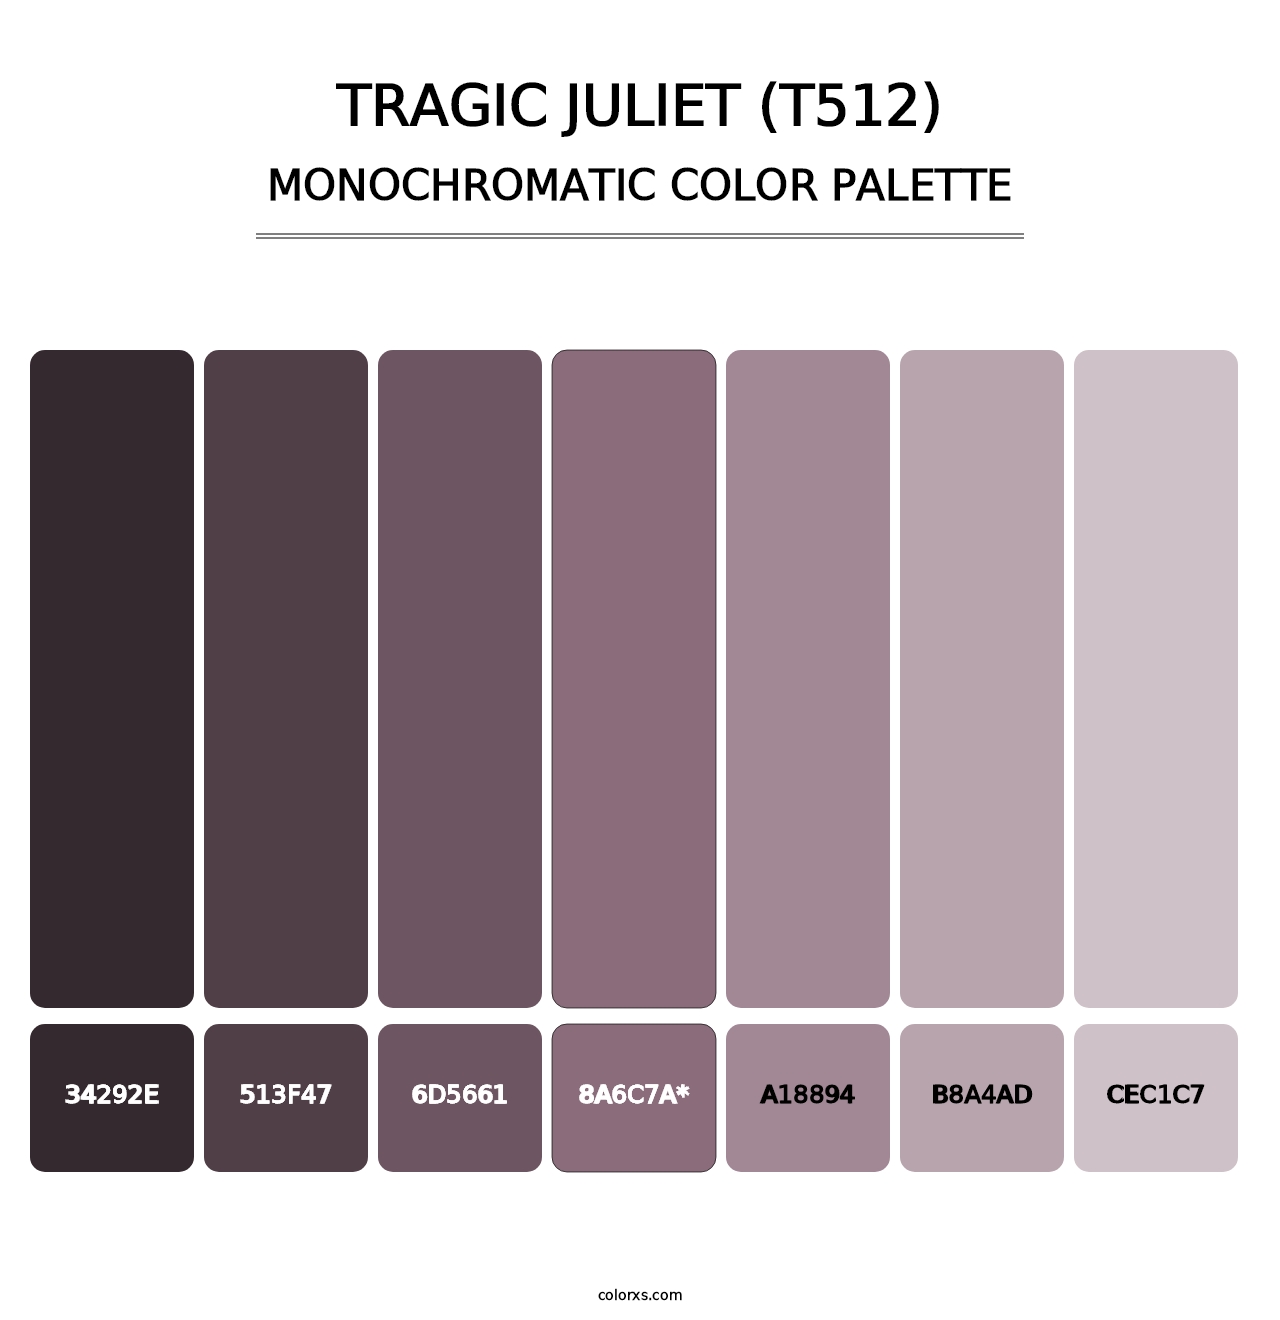 Tragic Juliet (T512) - Monochromatic Color Palette